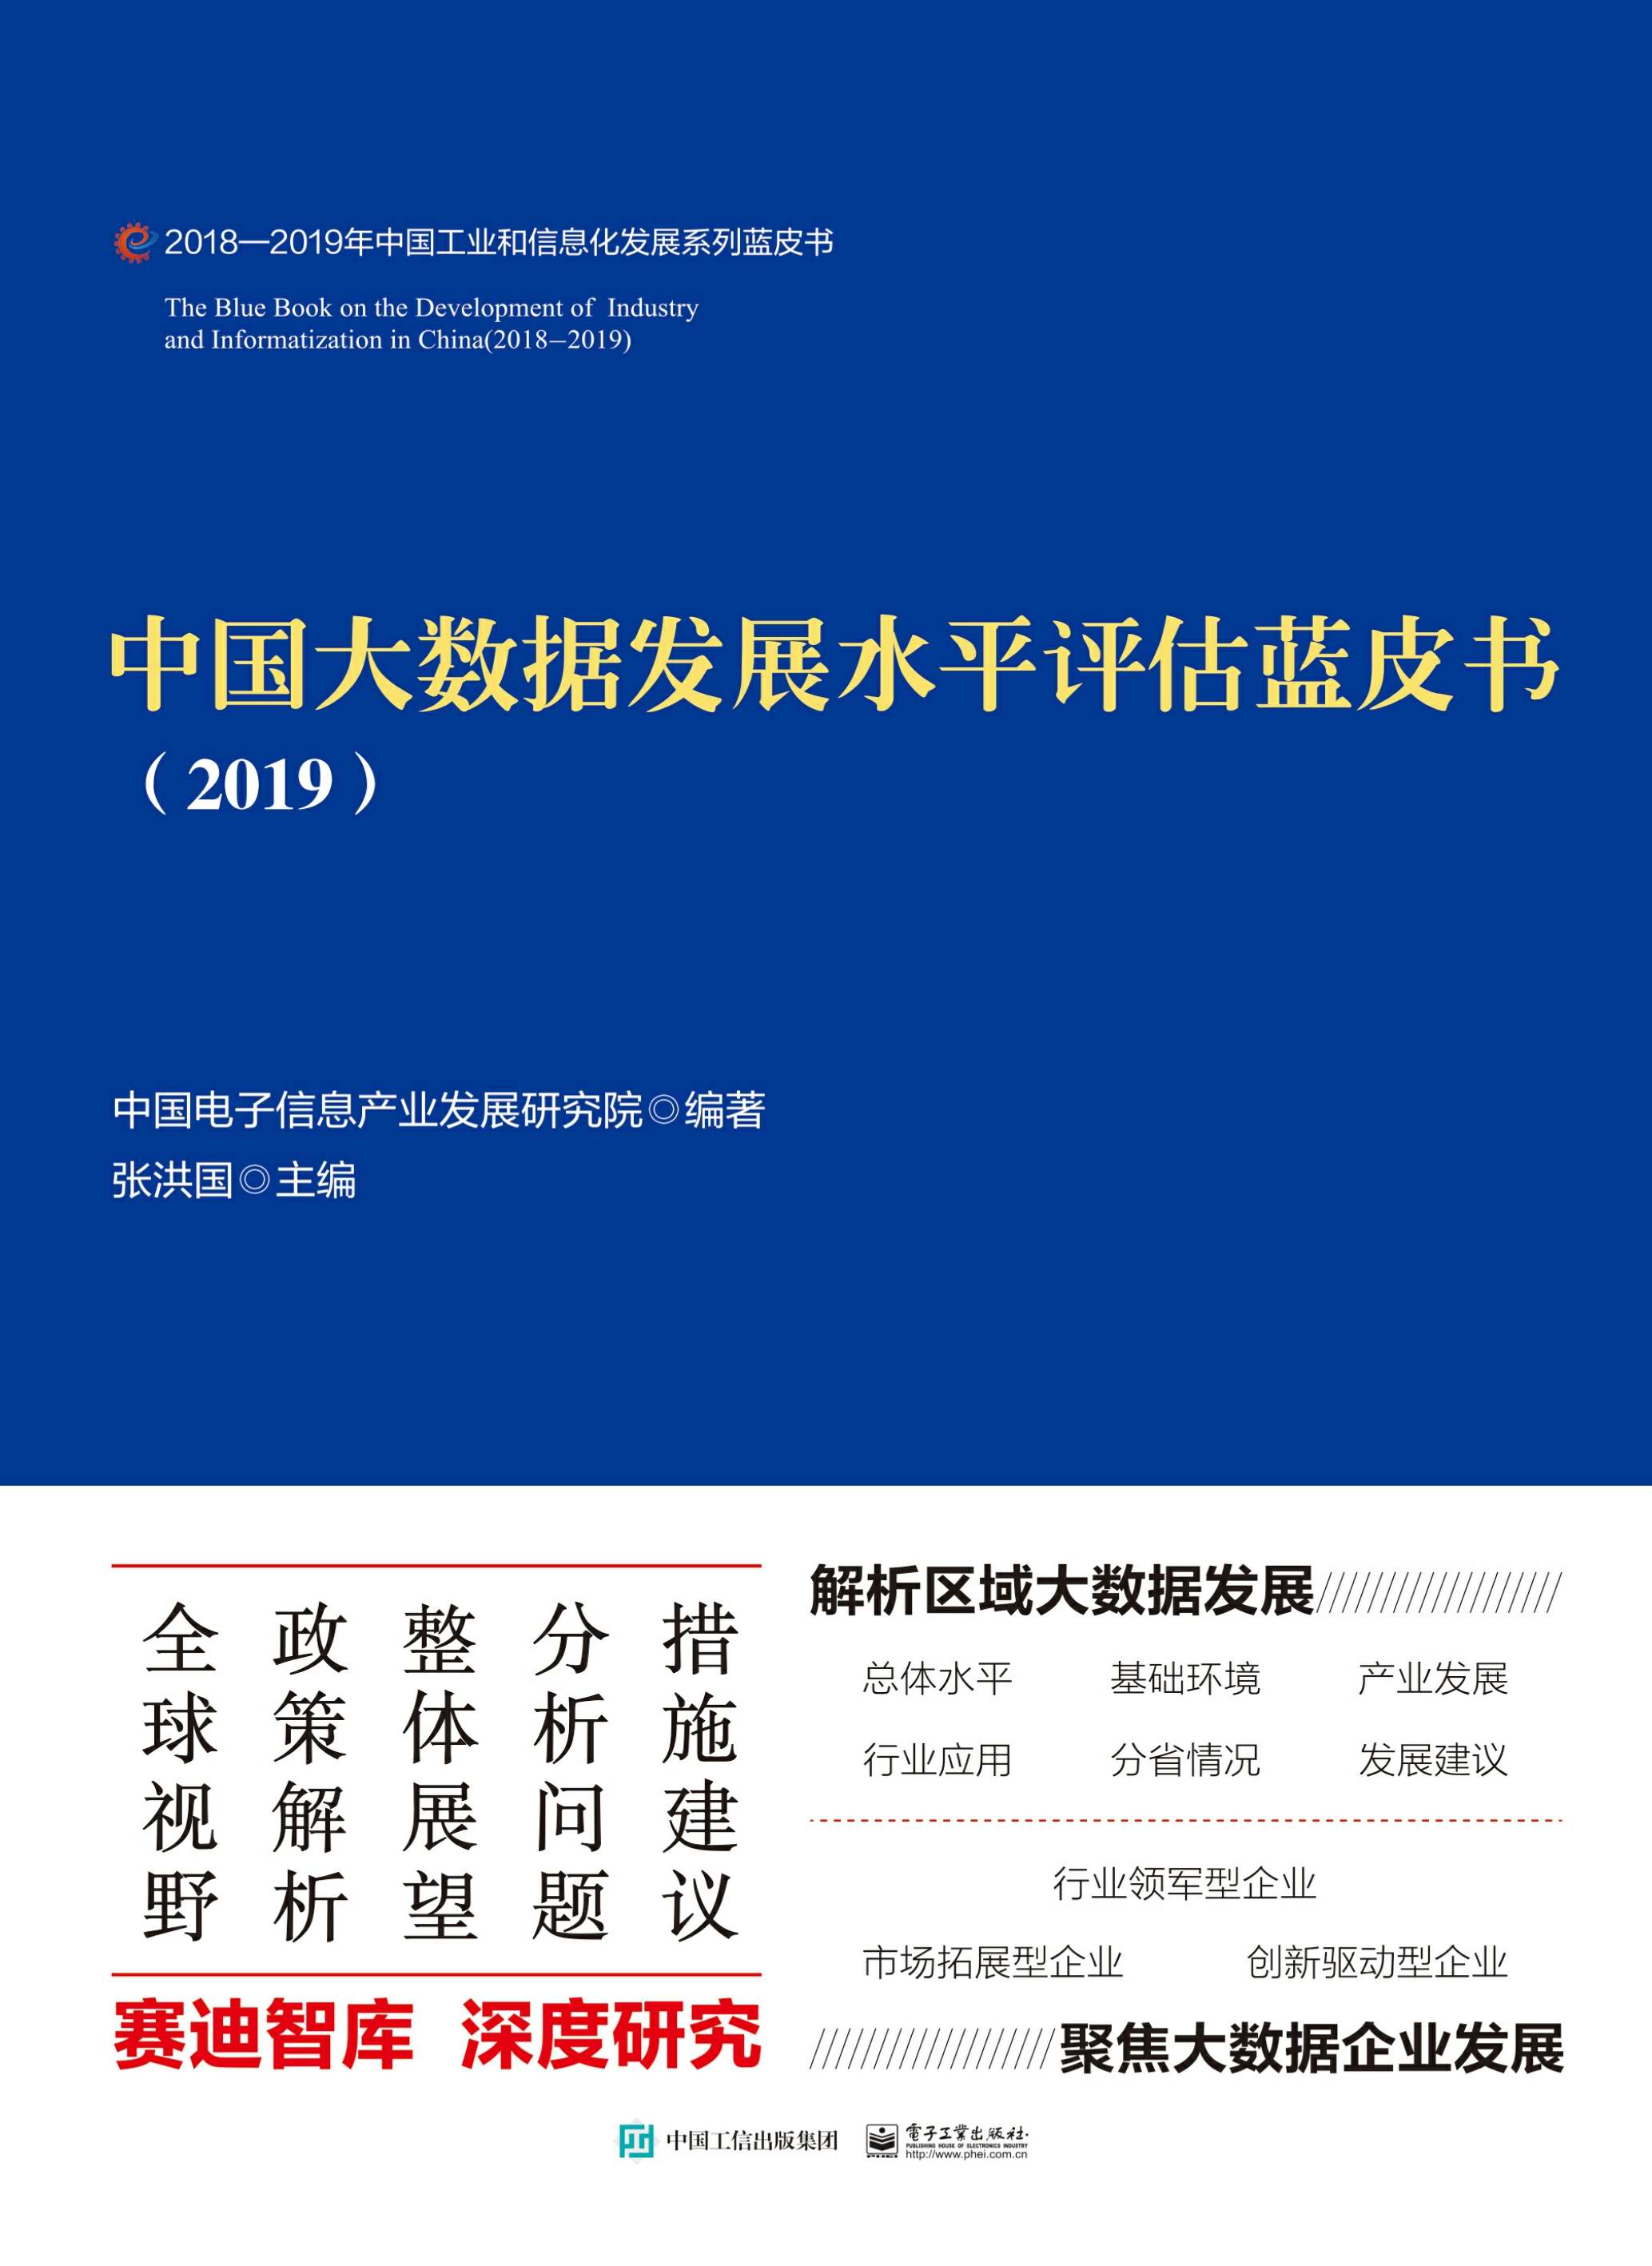 中国大数据发展水平评估蓝皮书（2019）